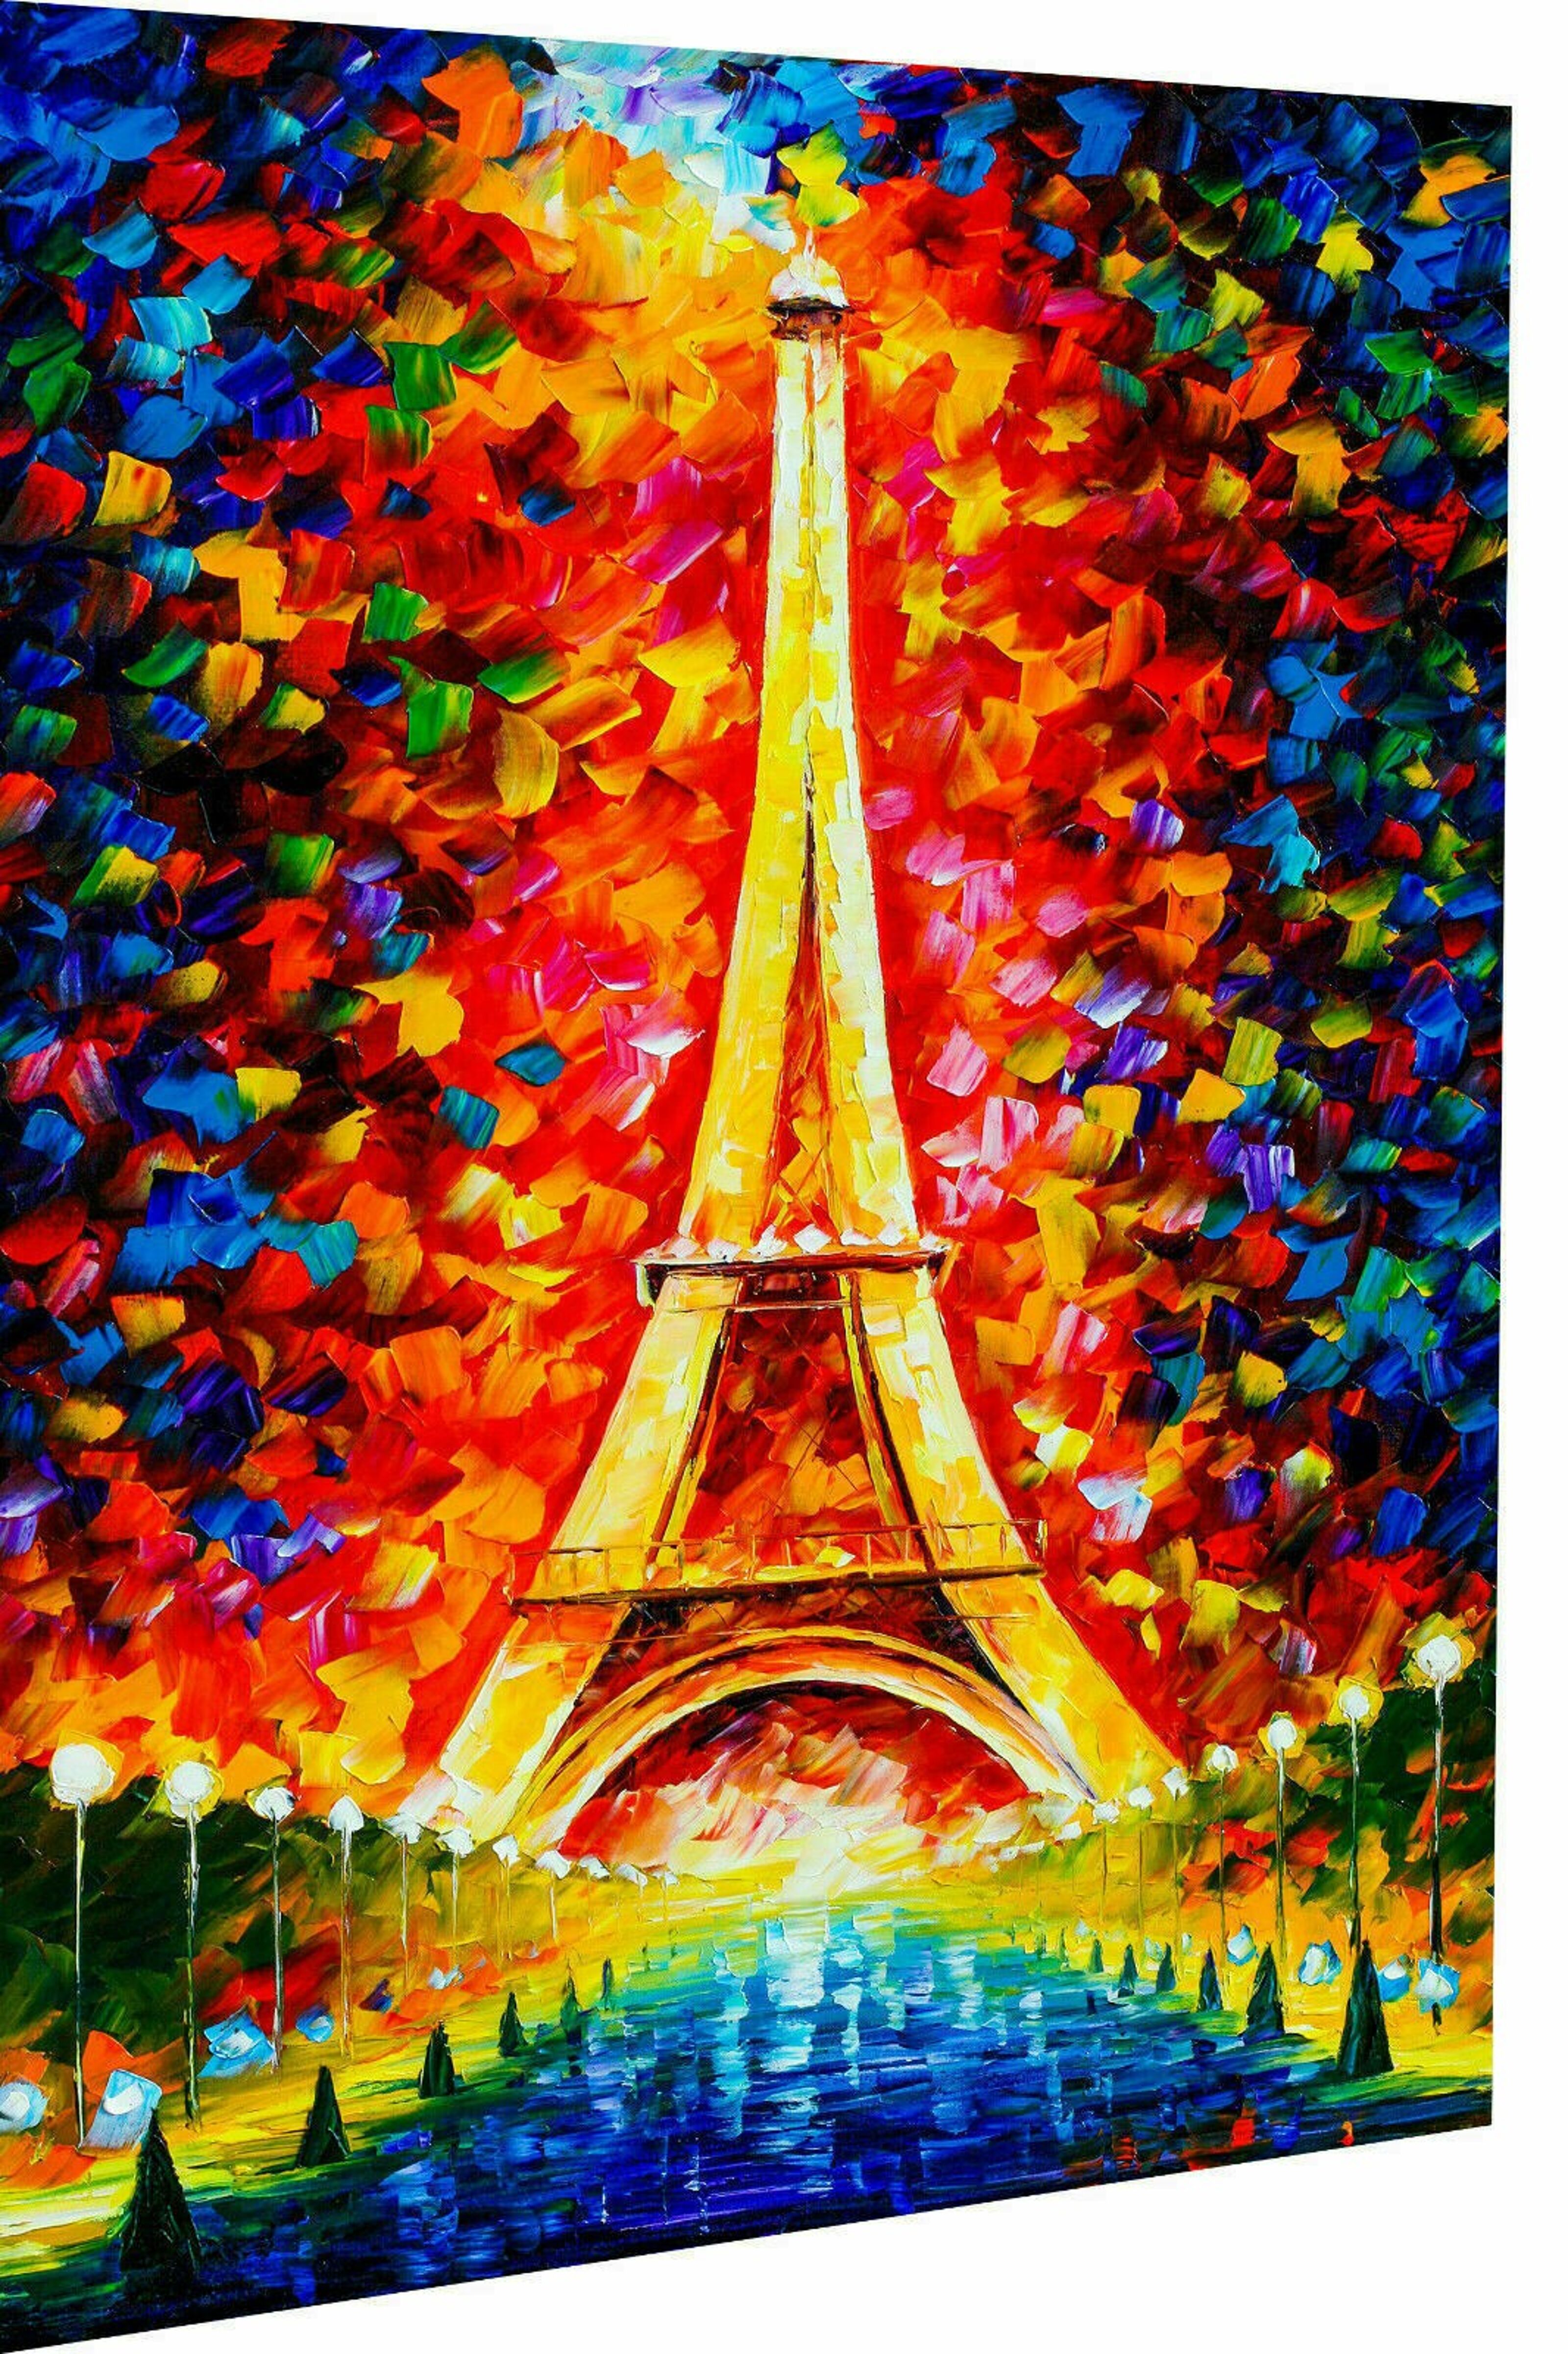 Pictures cm 60 Buy Pictures Portrait x Tower Wall Paris wholesale - Eiffel - 40 Canvas Format Art